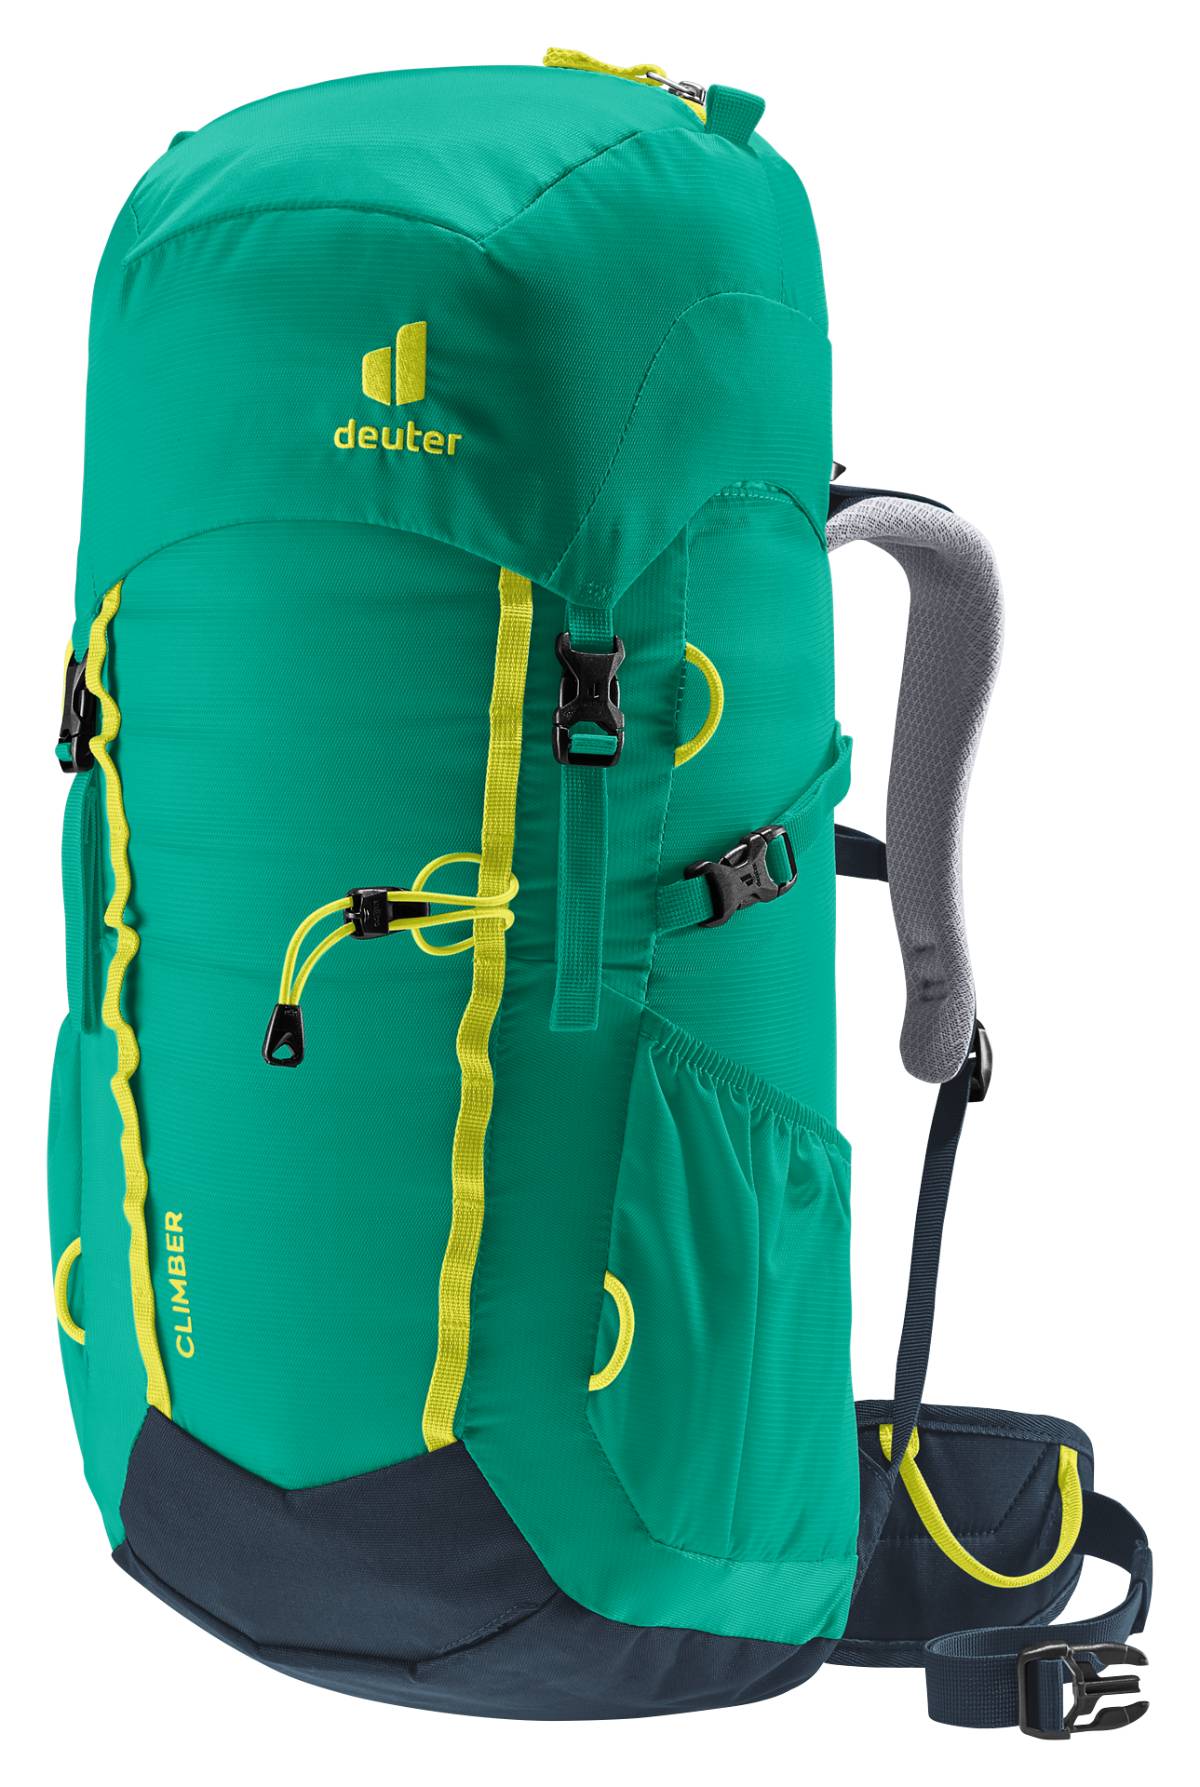 Mechanica Ritueel Kakadu Deuter Climber Backpack